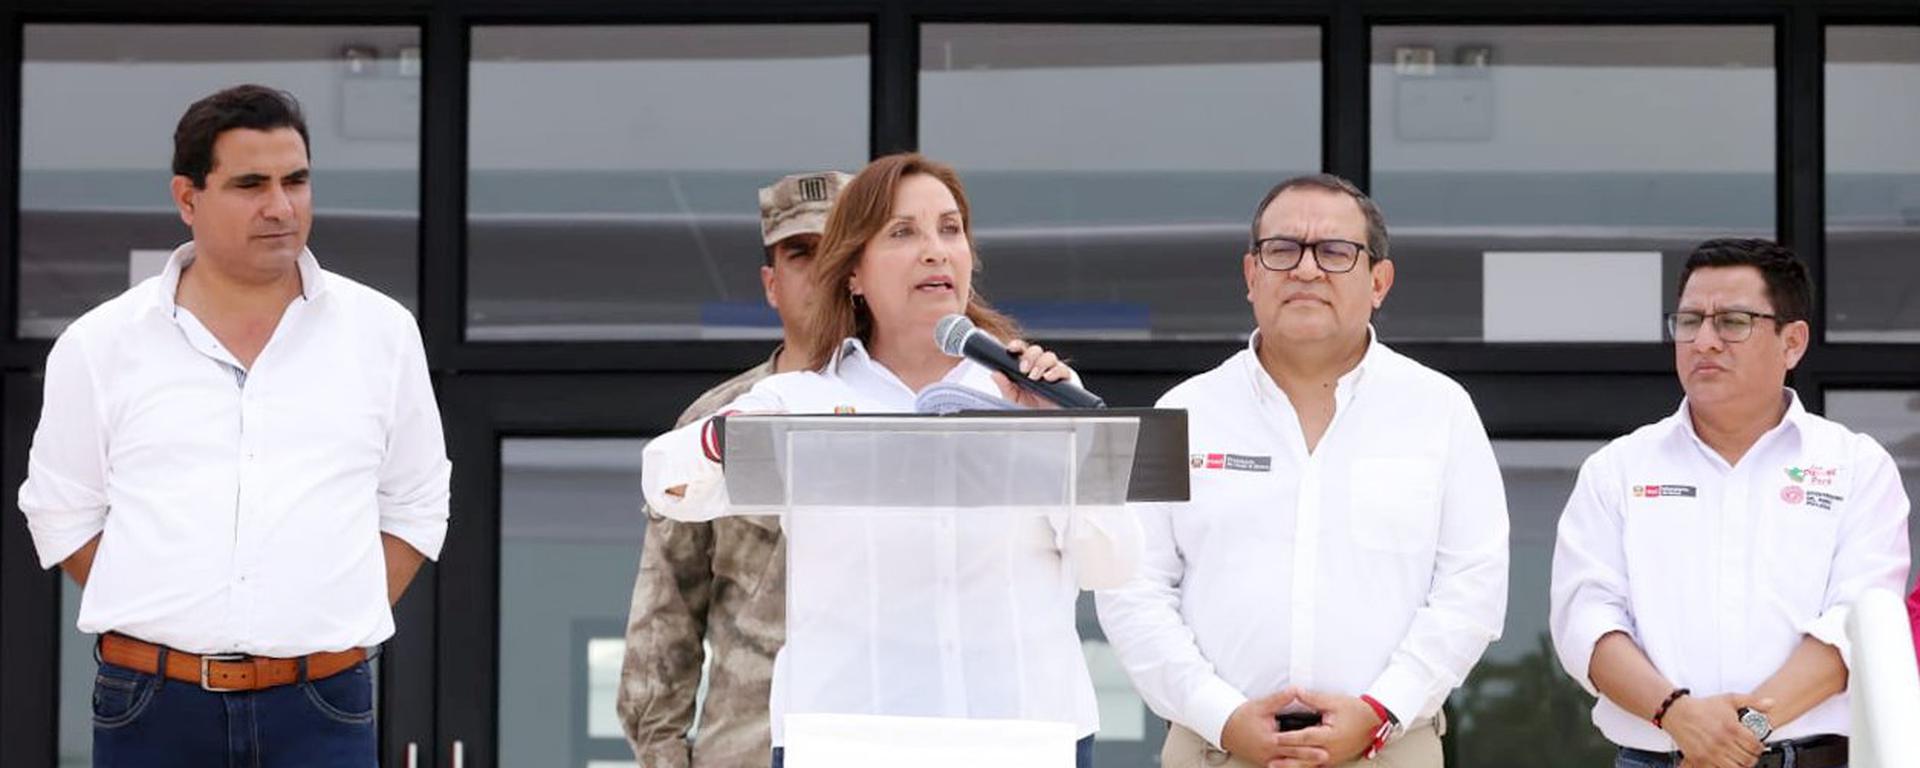 Dina, una presidenta apantallada. Crónica de Fernando Vivas sobre el actual dilema del Poder Ejecutivo